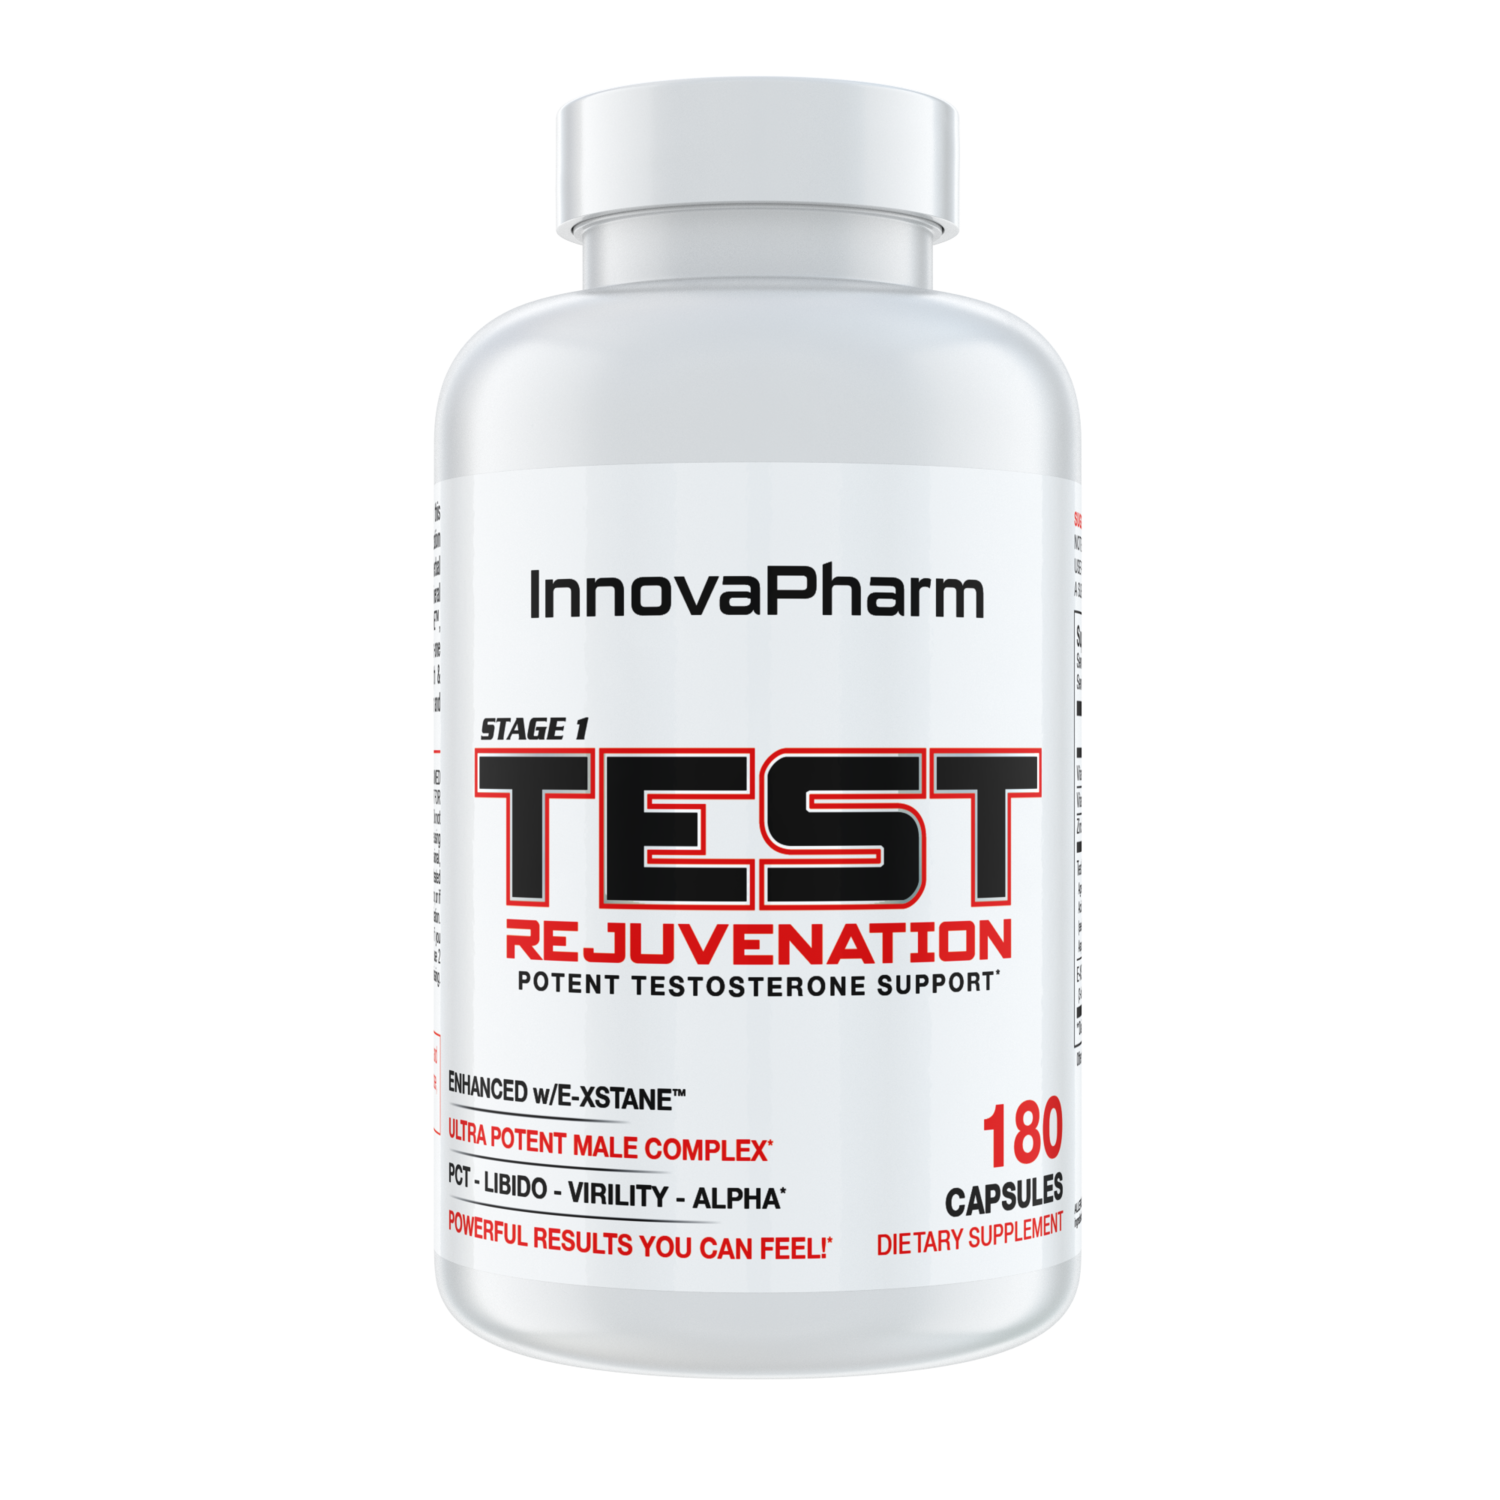 InnovaPharm Stage 1 Test Rejuvenation (Natural Test Booster)-The Supplement Haven